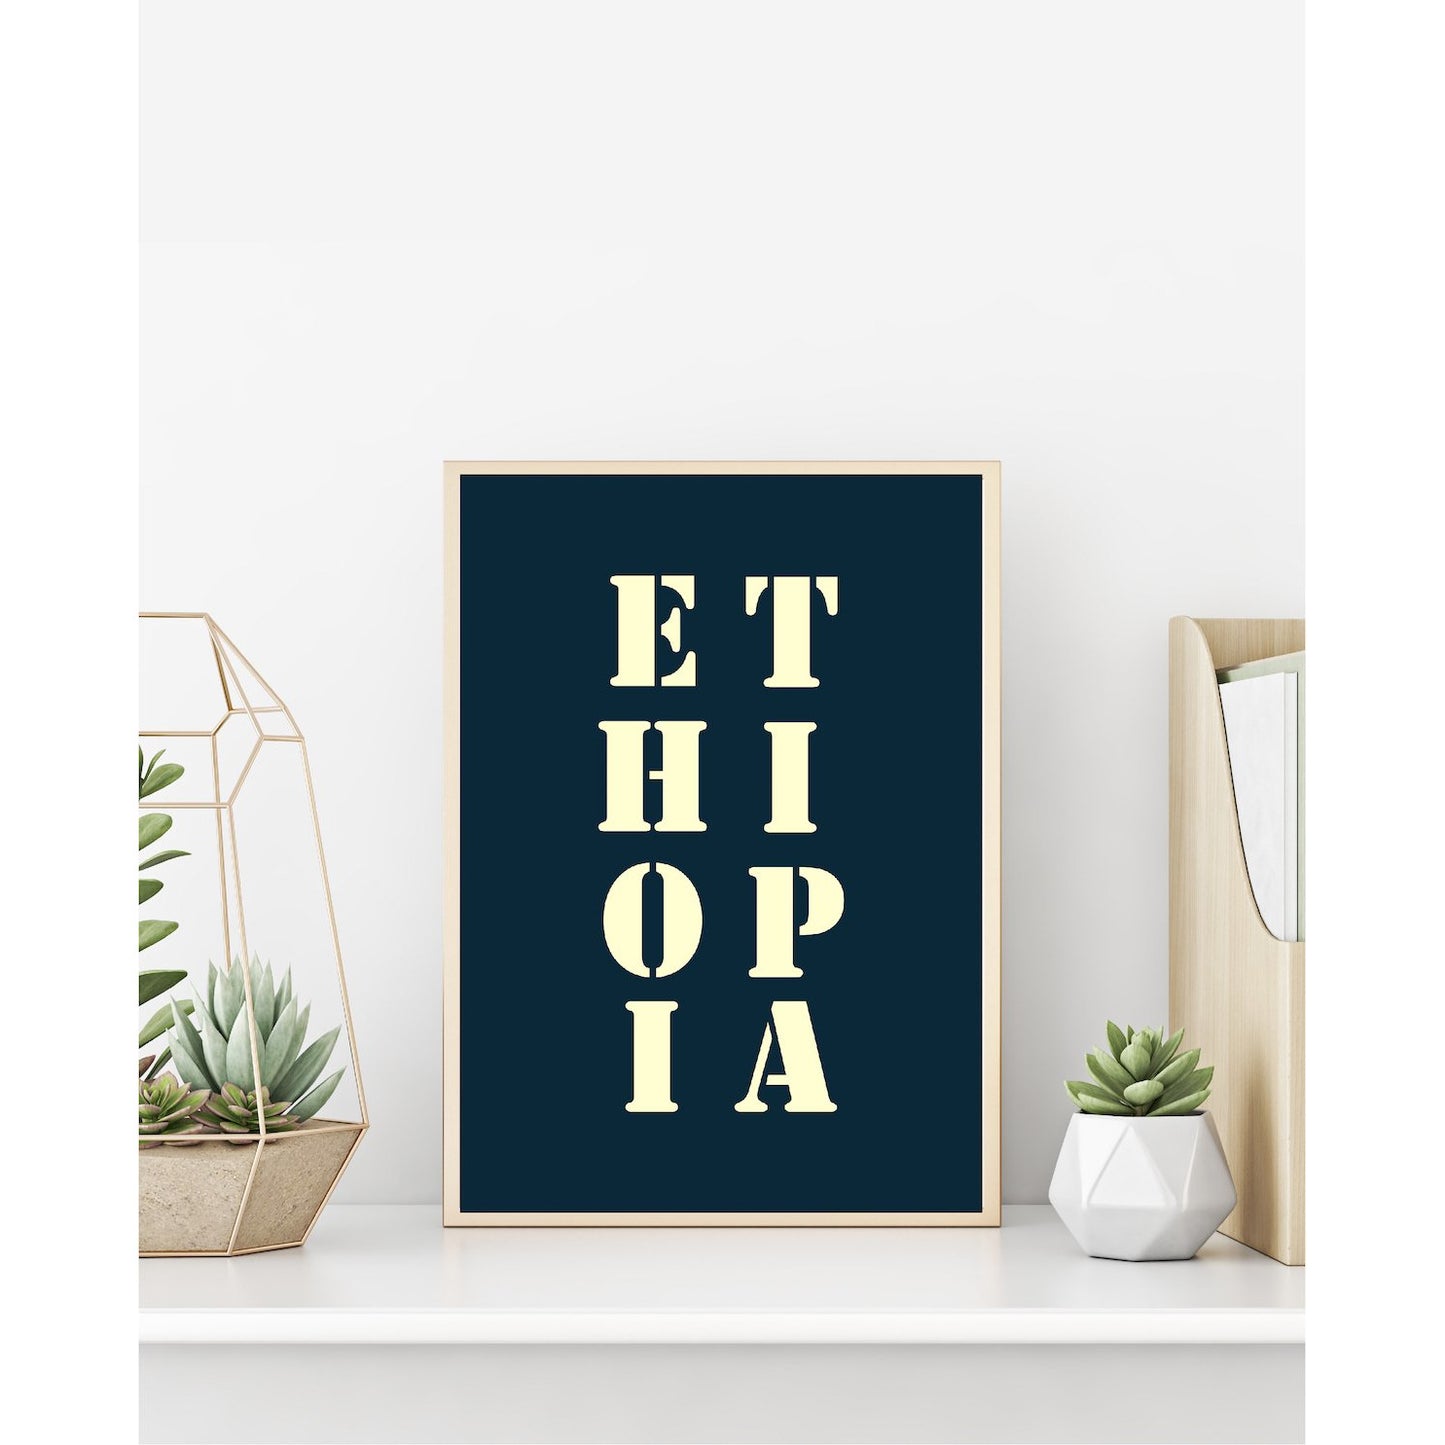 Affiche "Ethiopie" bleu nuit